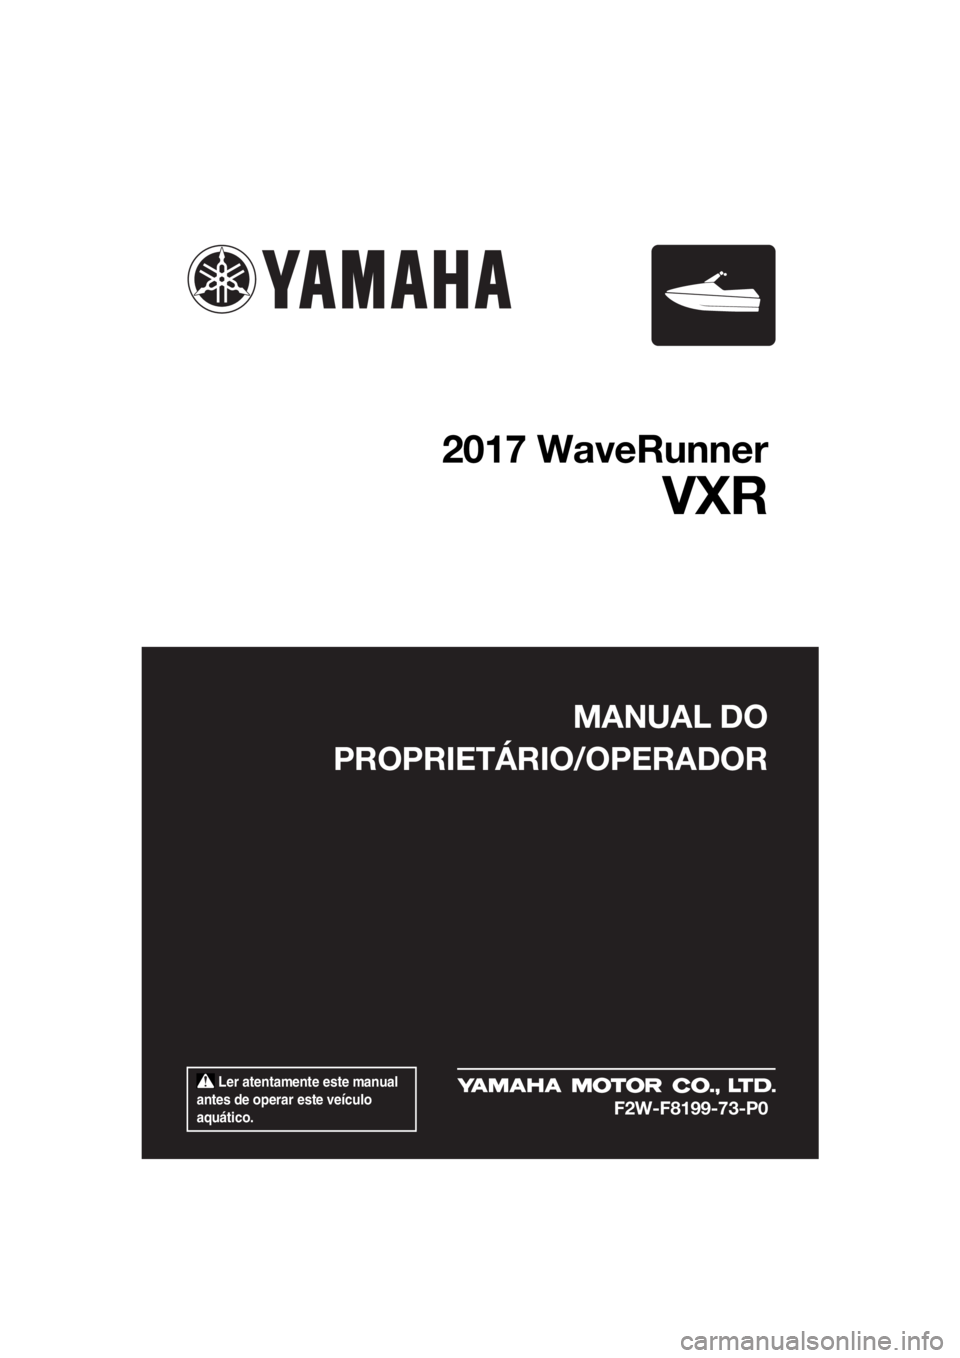 YAMAHA VXR 2017  Manual de utilização (in Portuguese)  Ler atentamente este manual 
antes de operar este veículo 
aquático.
MANUAL DO
PROPRIETÁRIO/OPERADOR
2017 WaveRunner
VXR
F2W-F8199-73-P0
UF2W73P0.book  Page 1  Monday, July 25, 2016  5:11 PM 